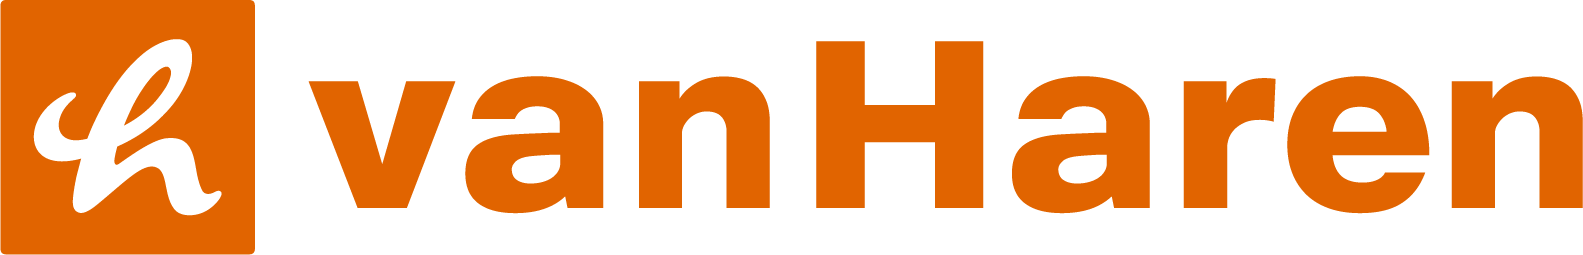 VHS-webshop-logo-h6-v1.png